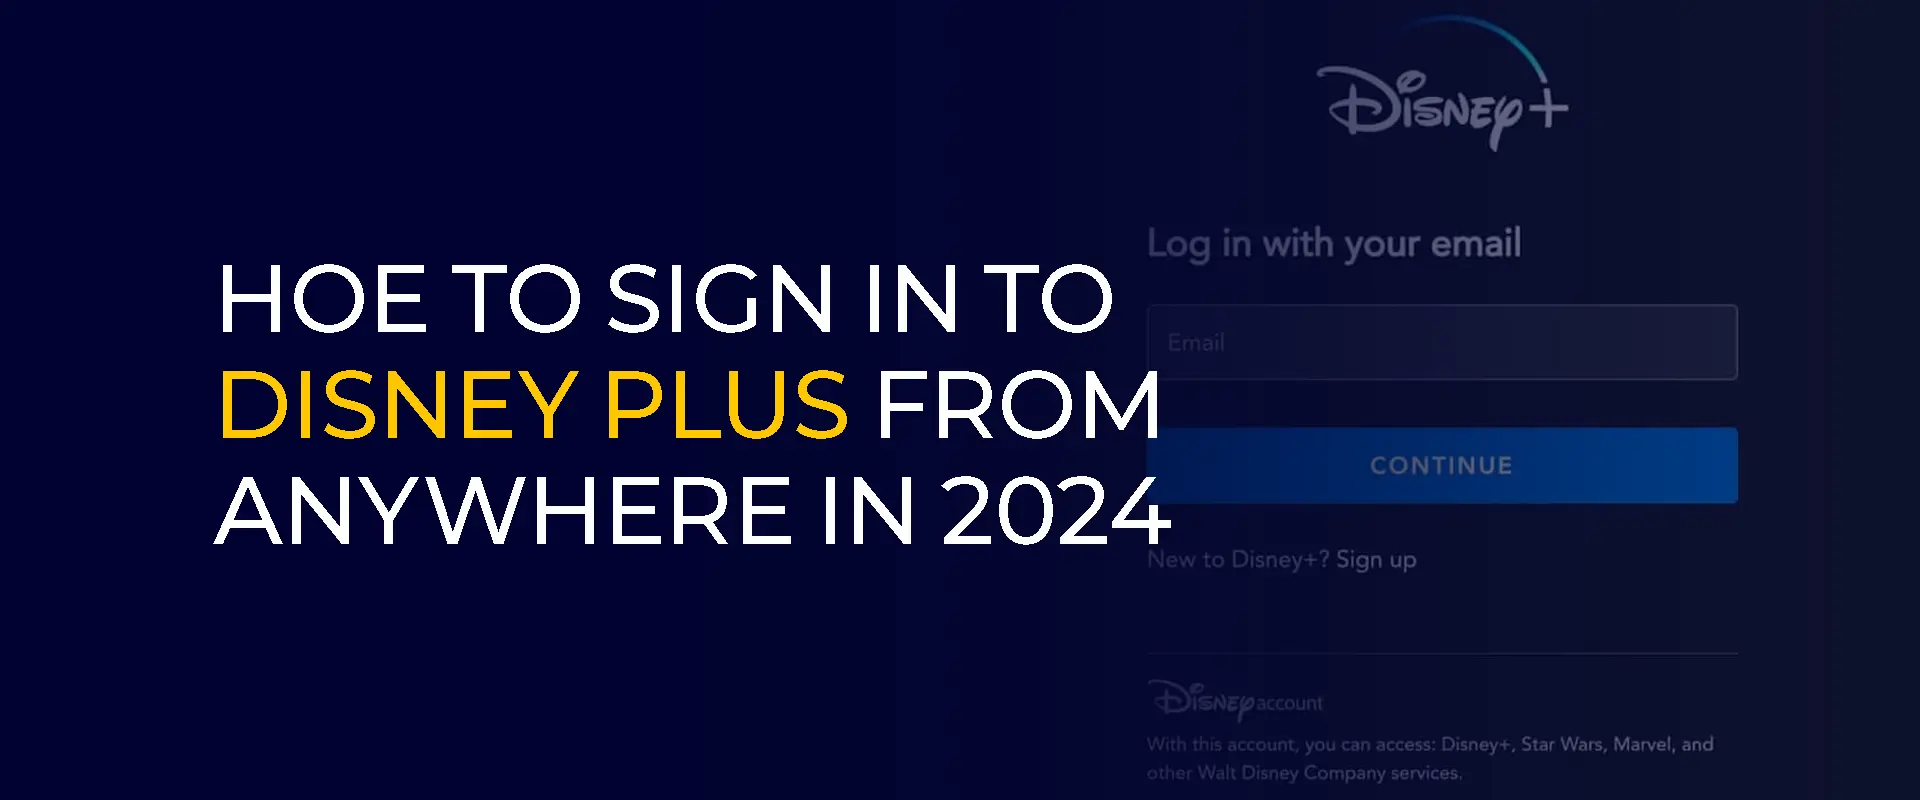 كيفية تسجيل الدخول إلى Disney Plus من أي مكان في عام 2024